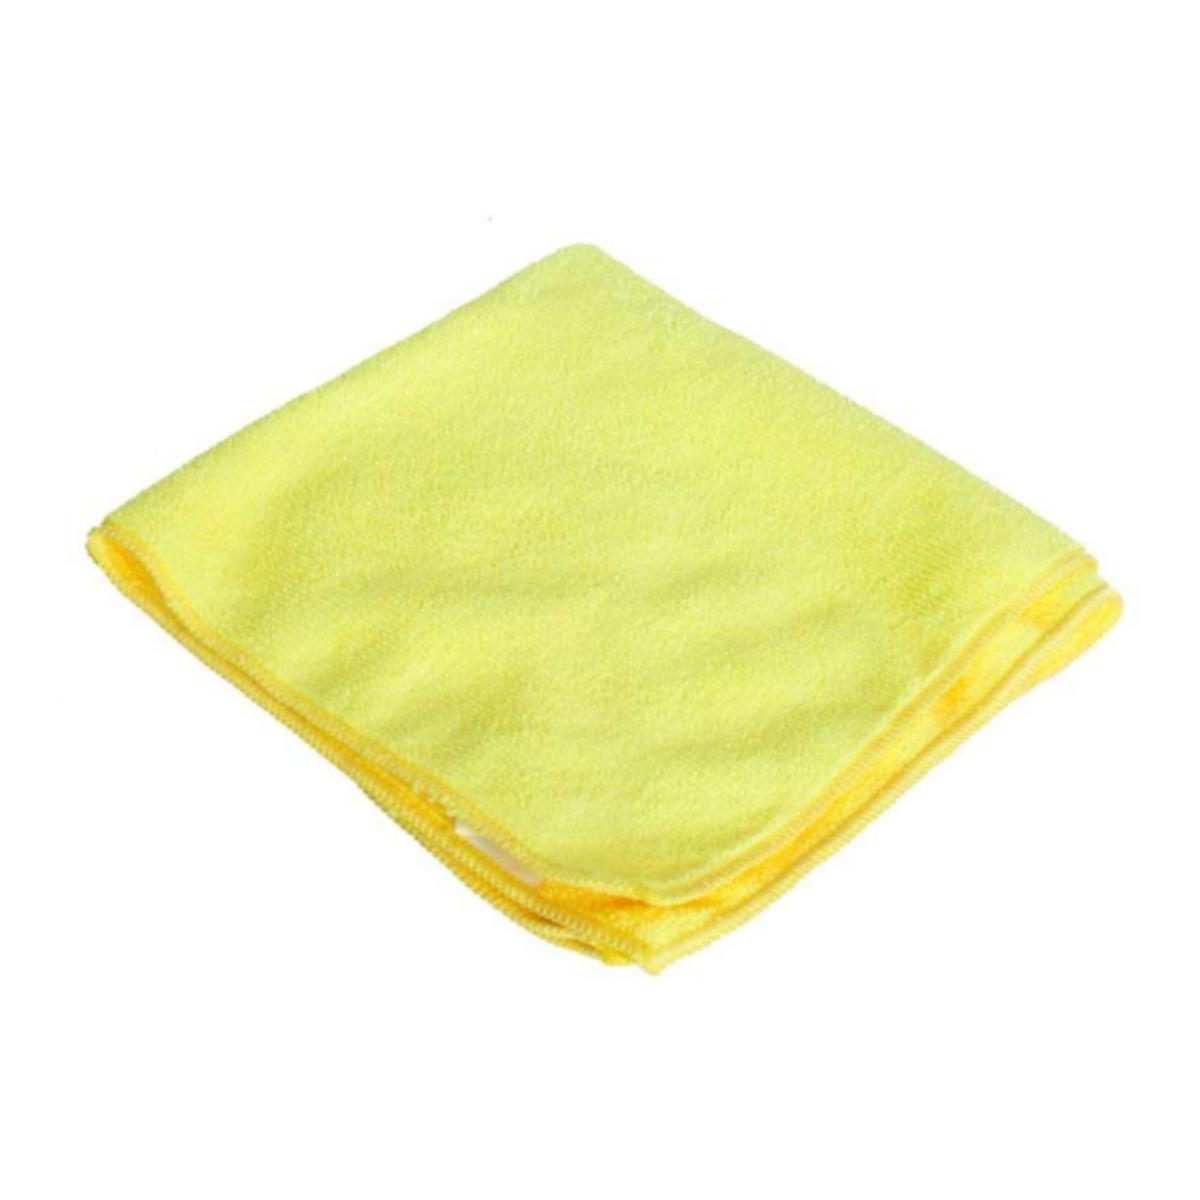 Paño de micro fibra color amarillo       Paño de micro fibra color amarilla , medida: 40 x 40 cm bolsa con 6 pzas                                                                                                                                                                                        .                                        - SUPER MOPS